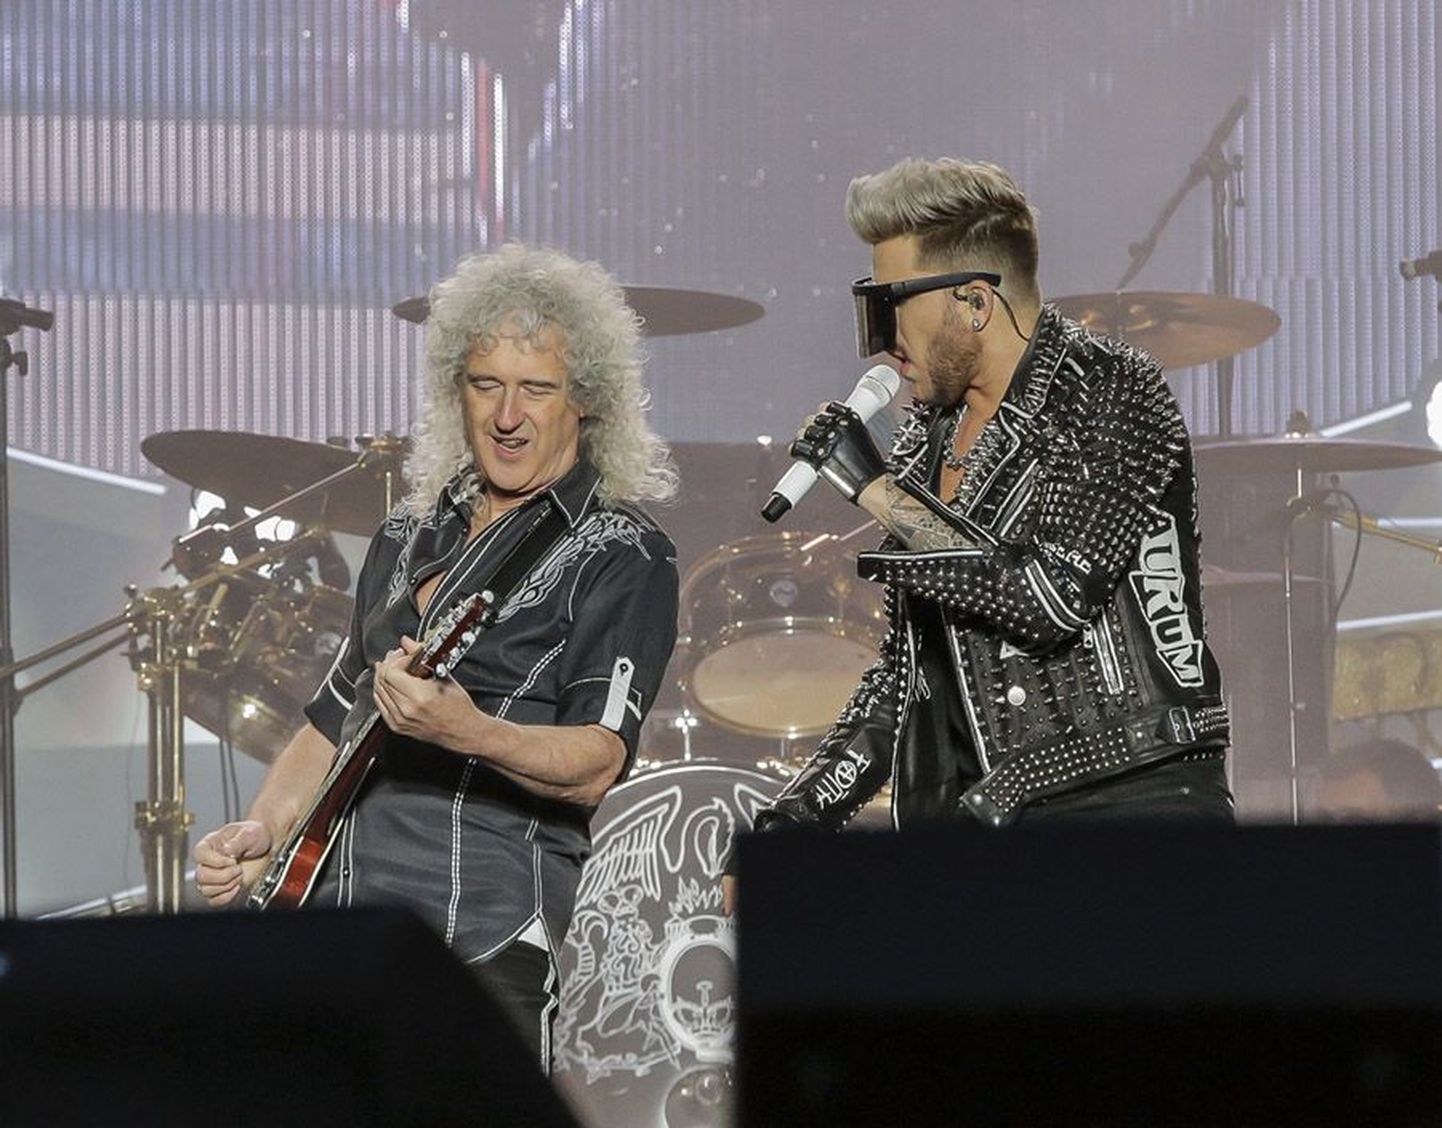 Kaks põlvkonda. Adam Lambert ja Brian May kõlksusid laval kokku nagu hästi valitud pühademunad.